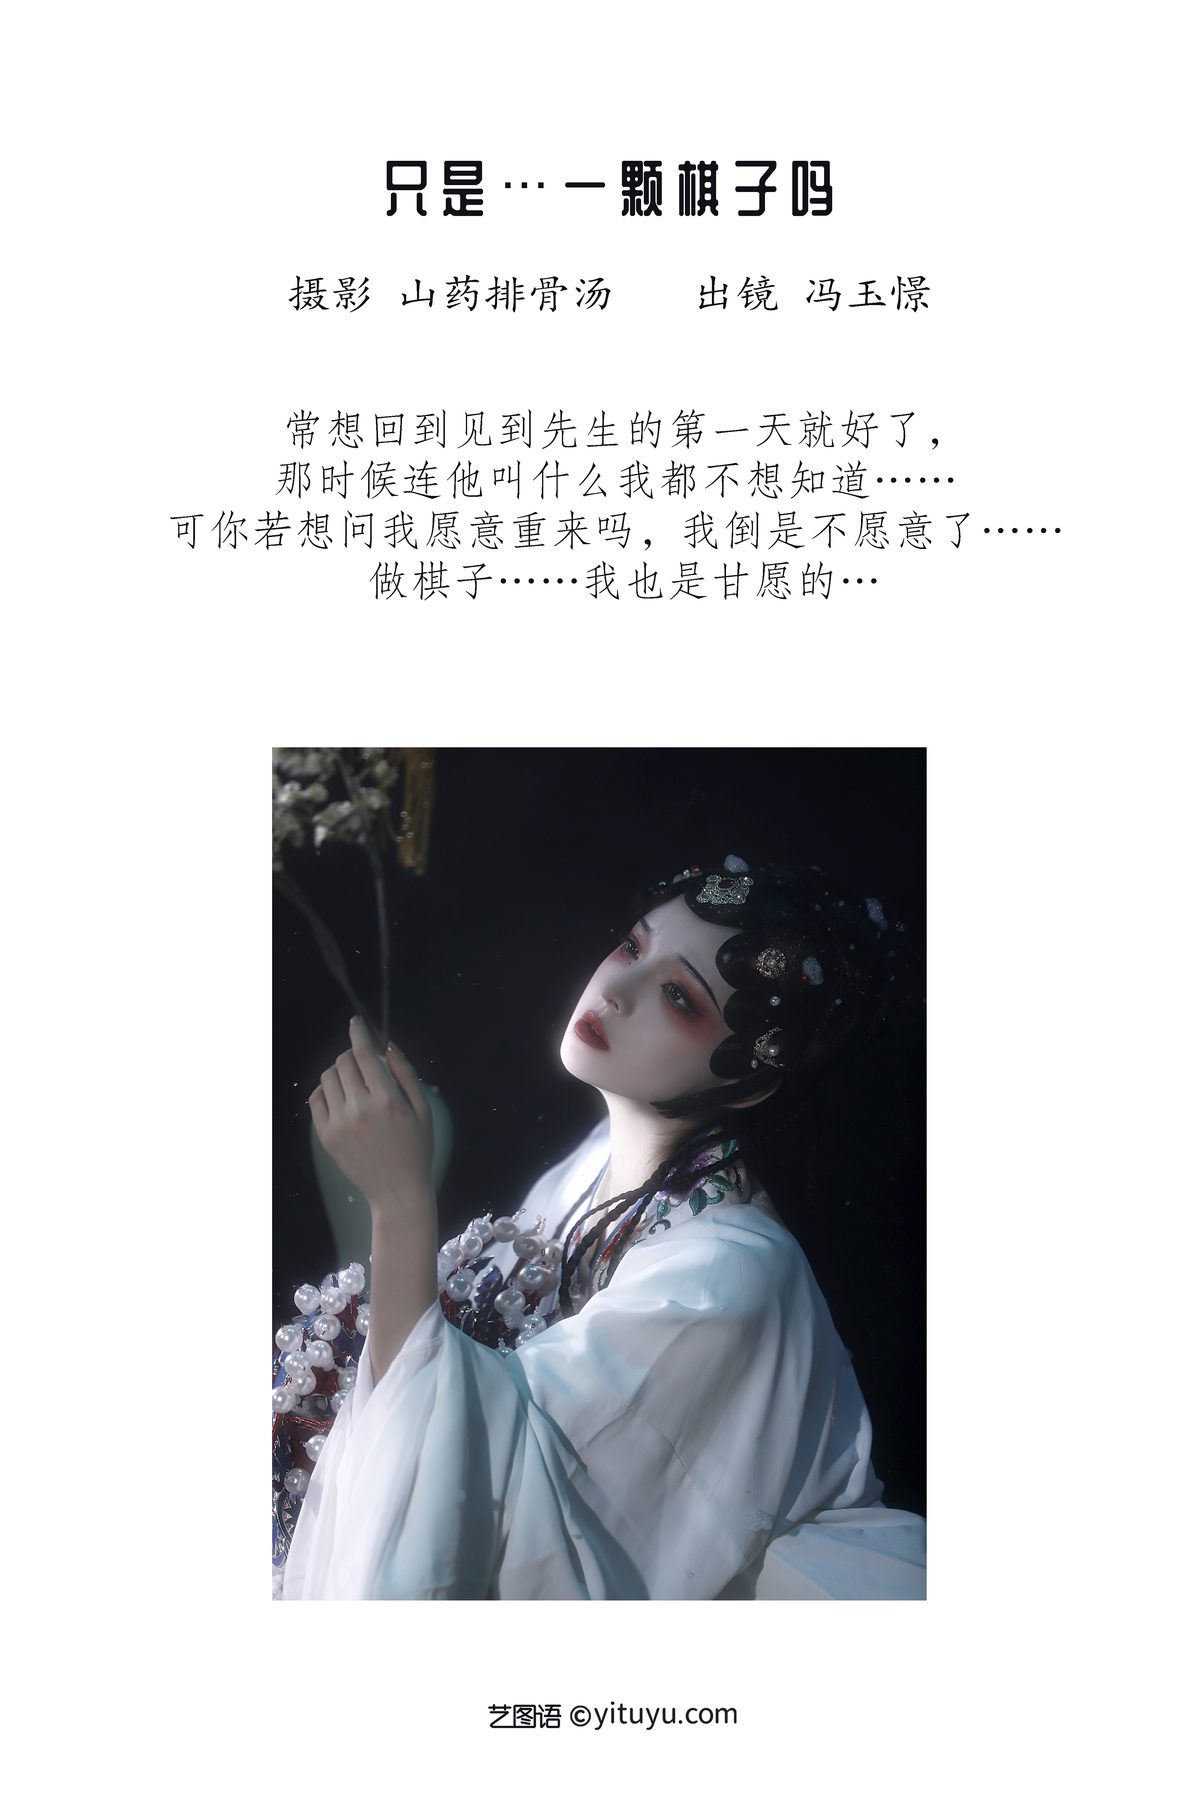 YiTuYu艺图语 Vol 3465 Feng Yu Jing 0002 2150808593.jpg